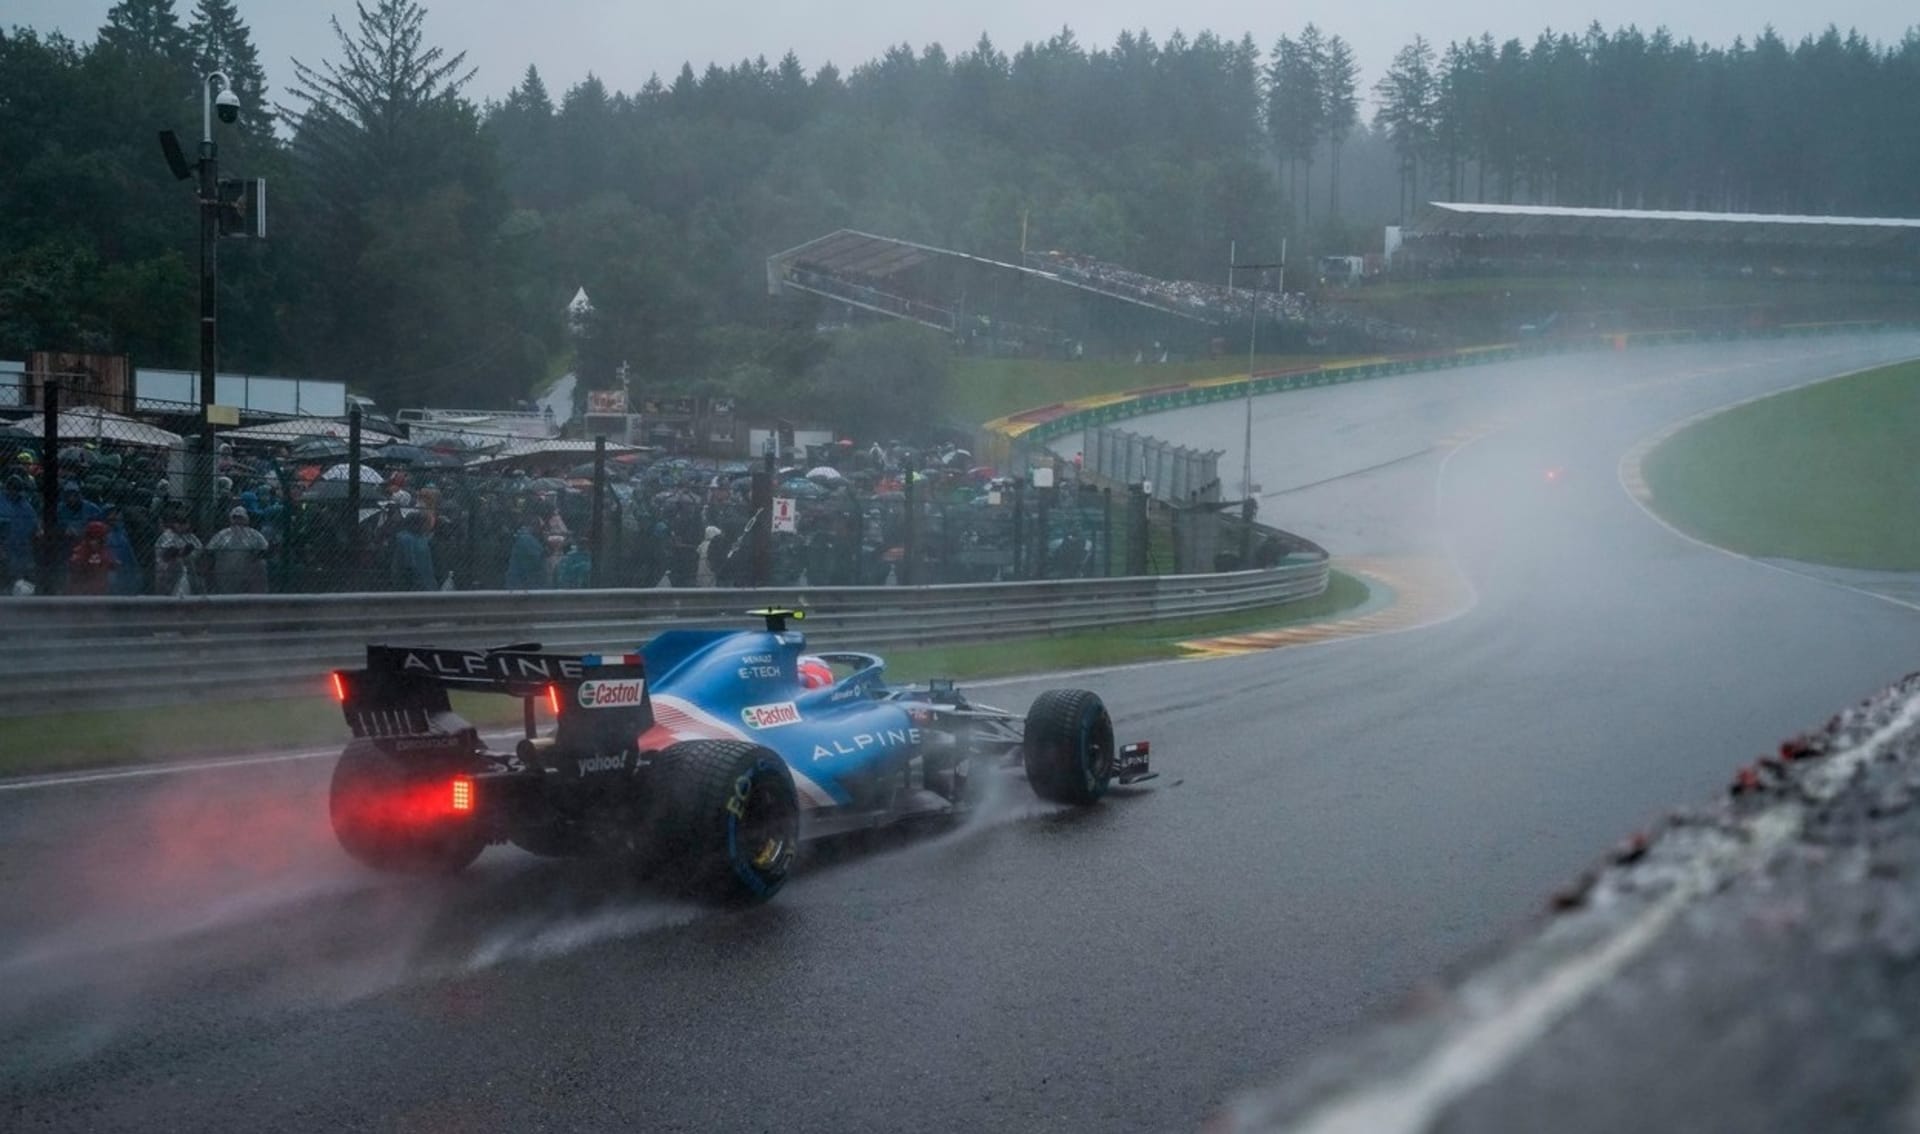 Asfalt na belgickém okruhu Spa neměl během neděle jakoukoliv šanci uschnout. Silný déšť zařídil jeden z nejbizarnějších závodů v historii formule 1.